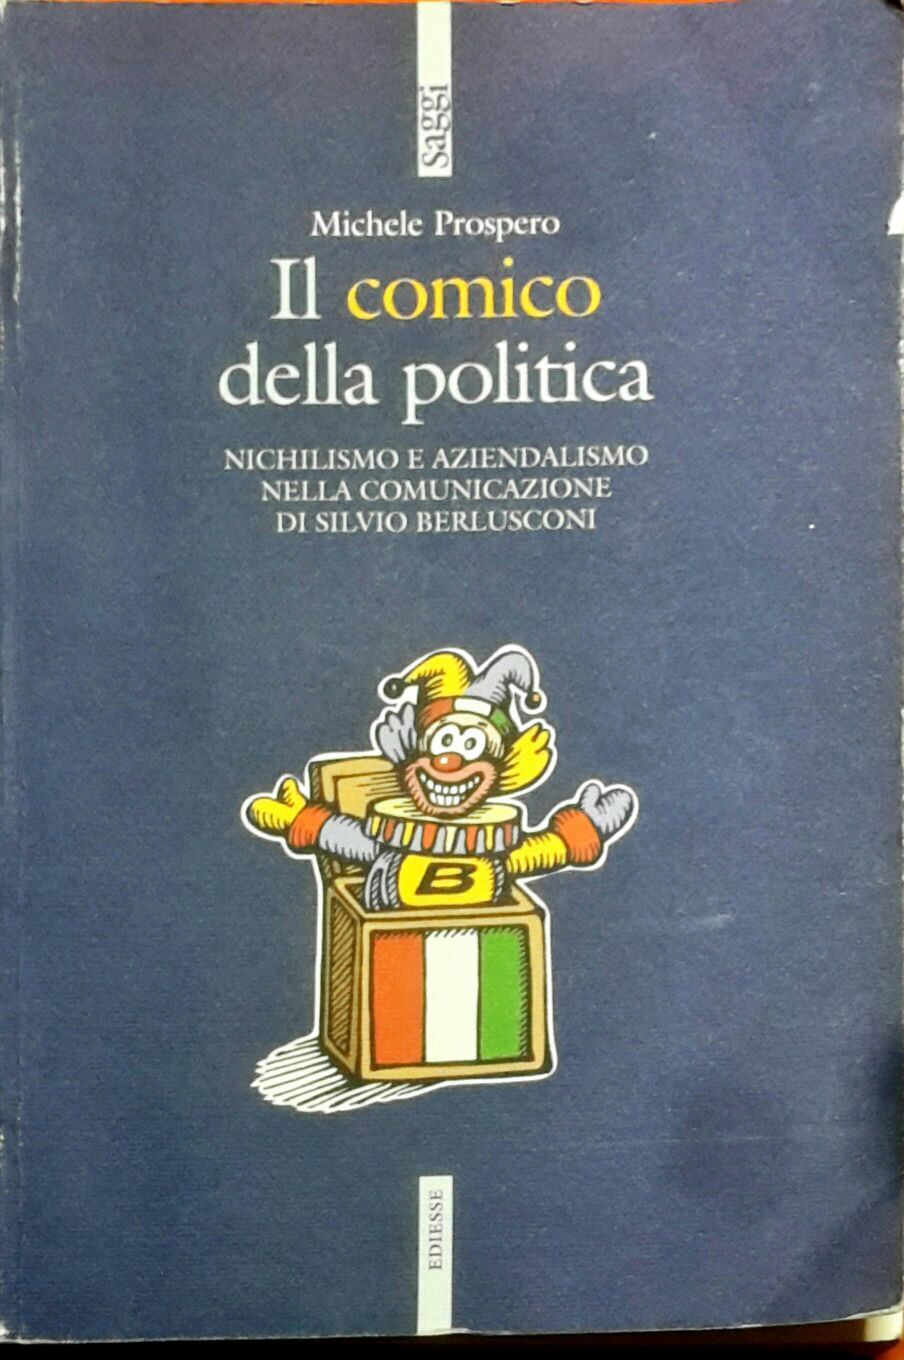 Il comico della politica - Michele Prospero - Ediesse -N